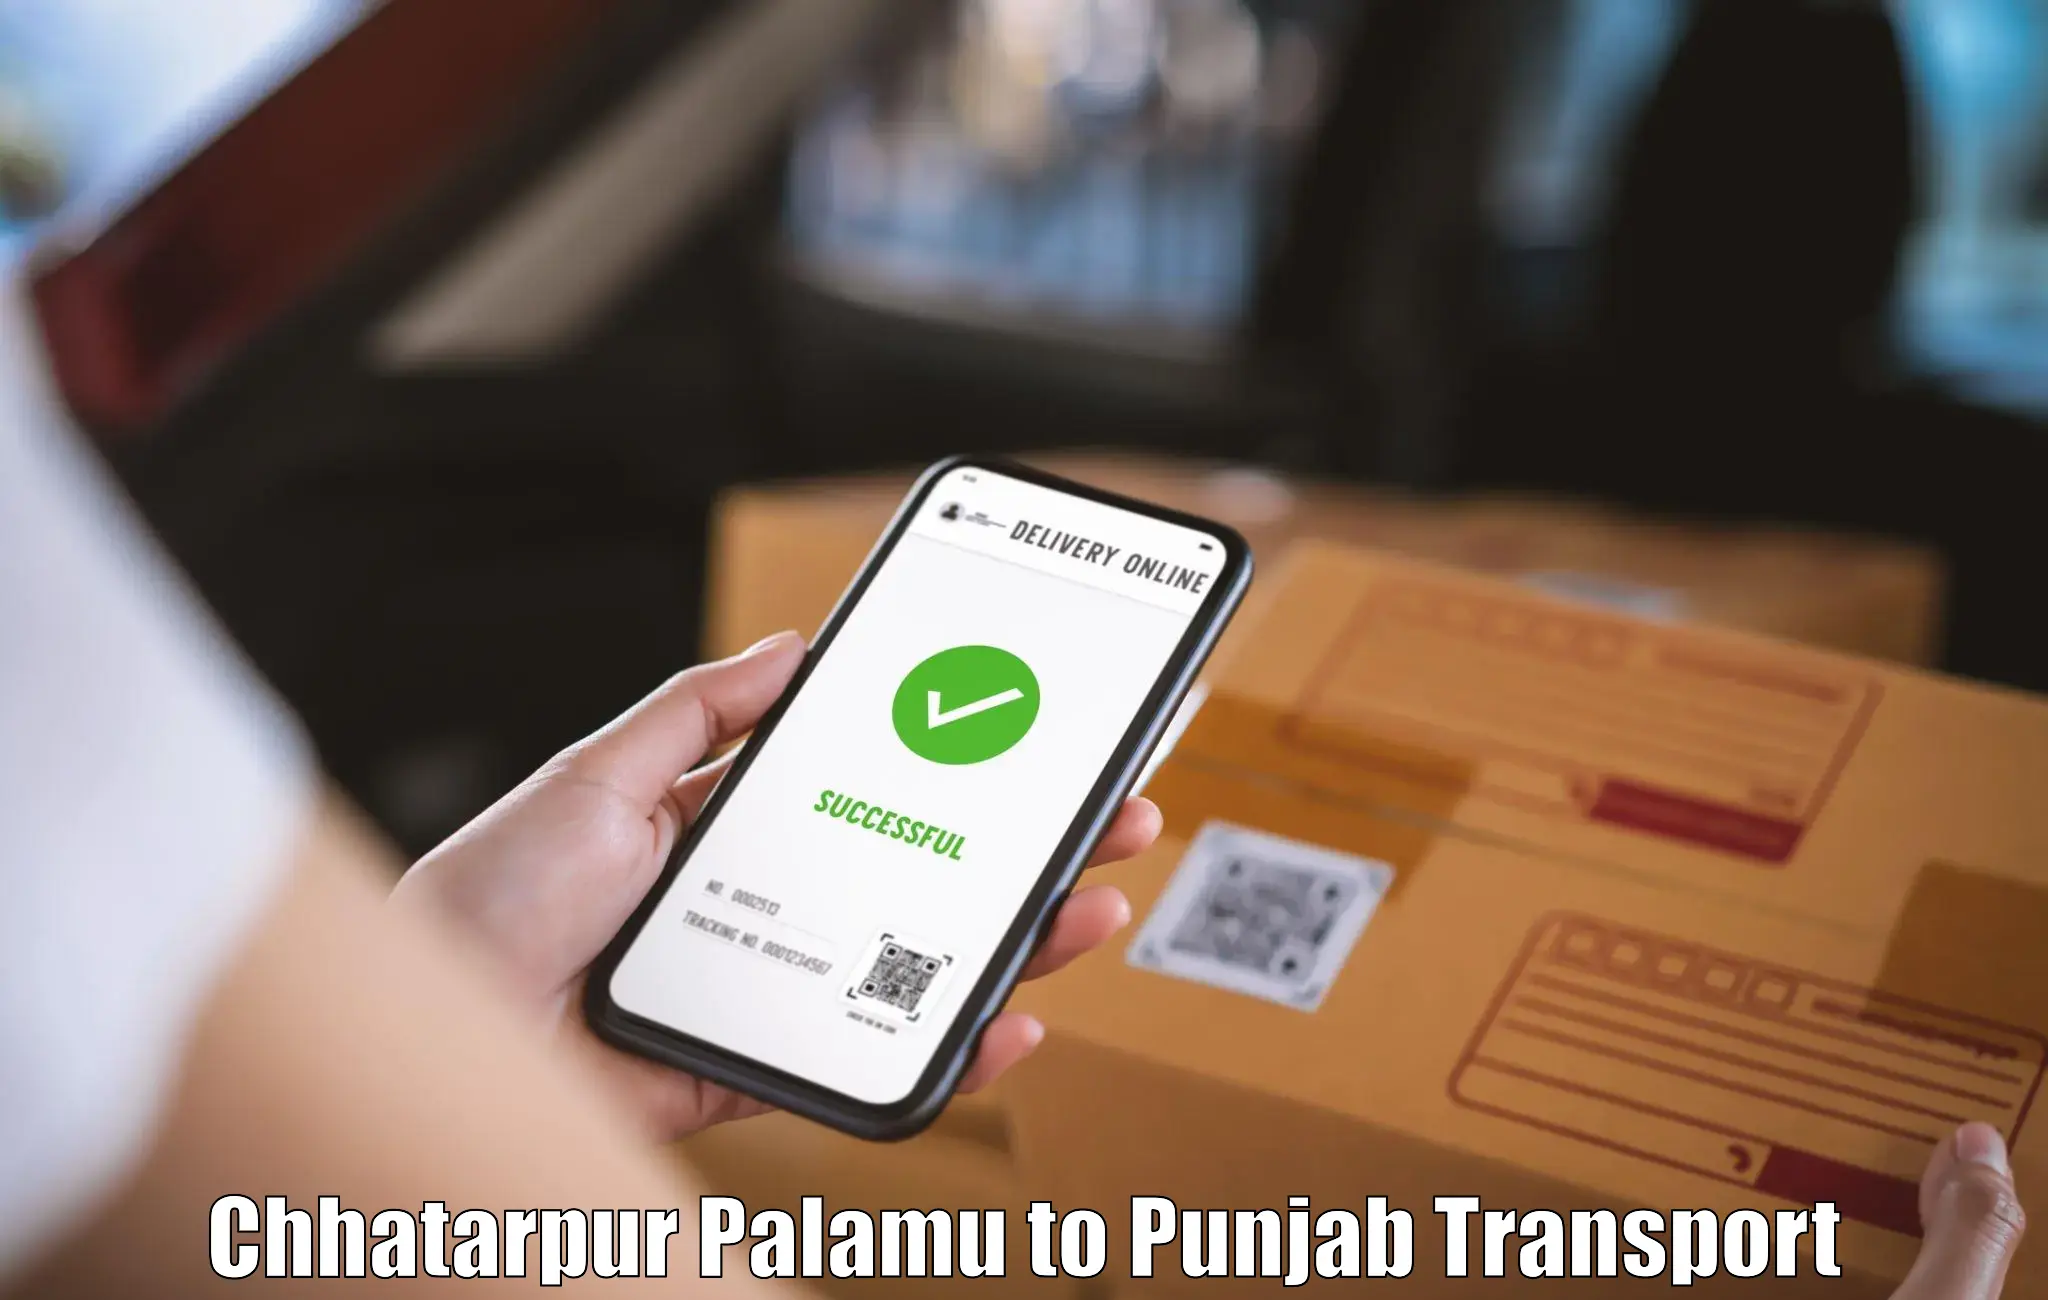 Transport shared services Chhatarpur Palamu to Muktsar